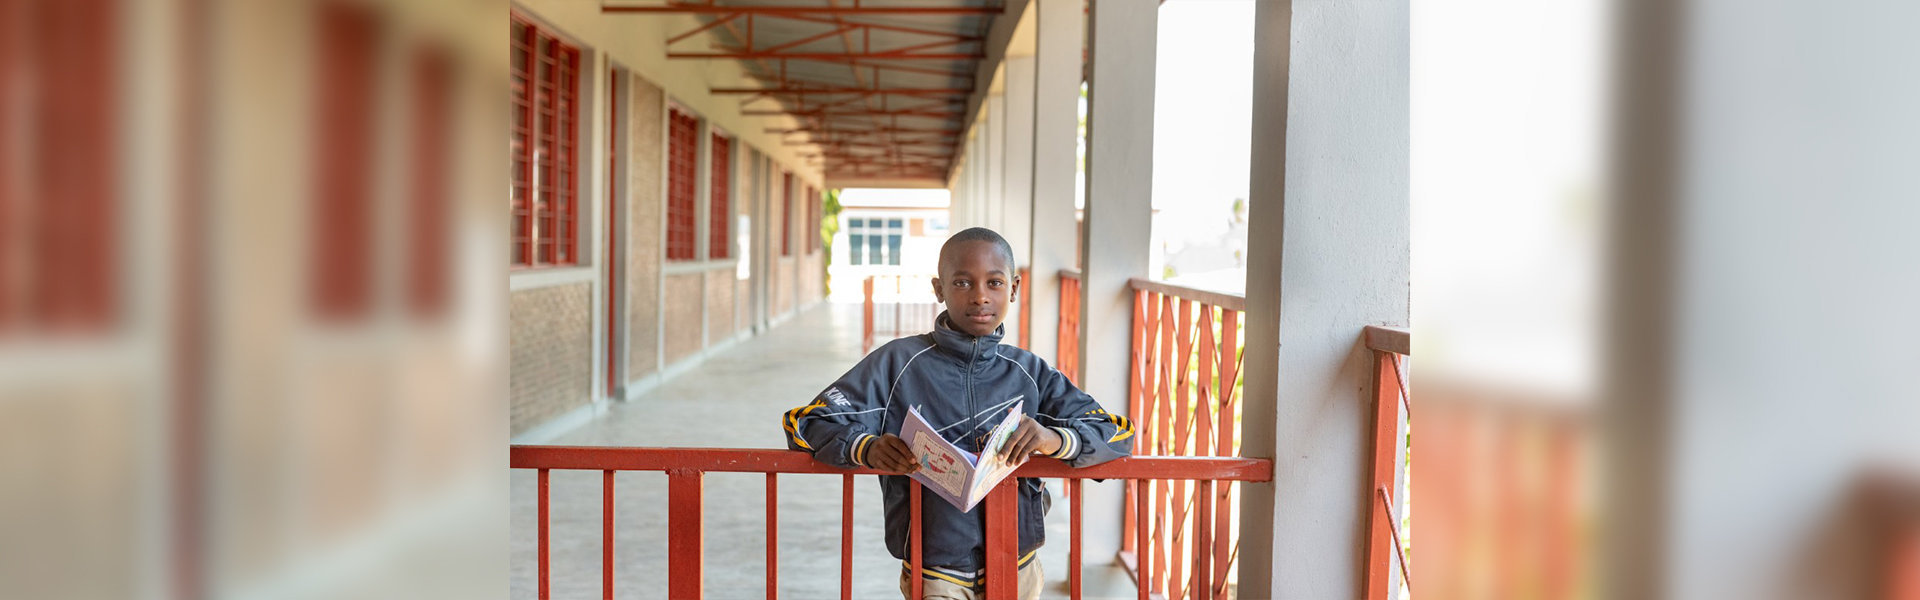 Schulhefte für bedürftige Kinder in Burundi